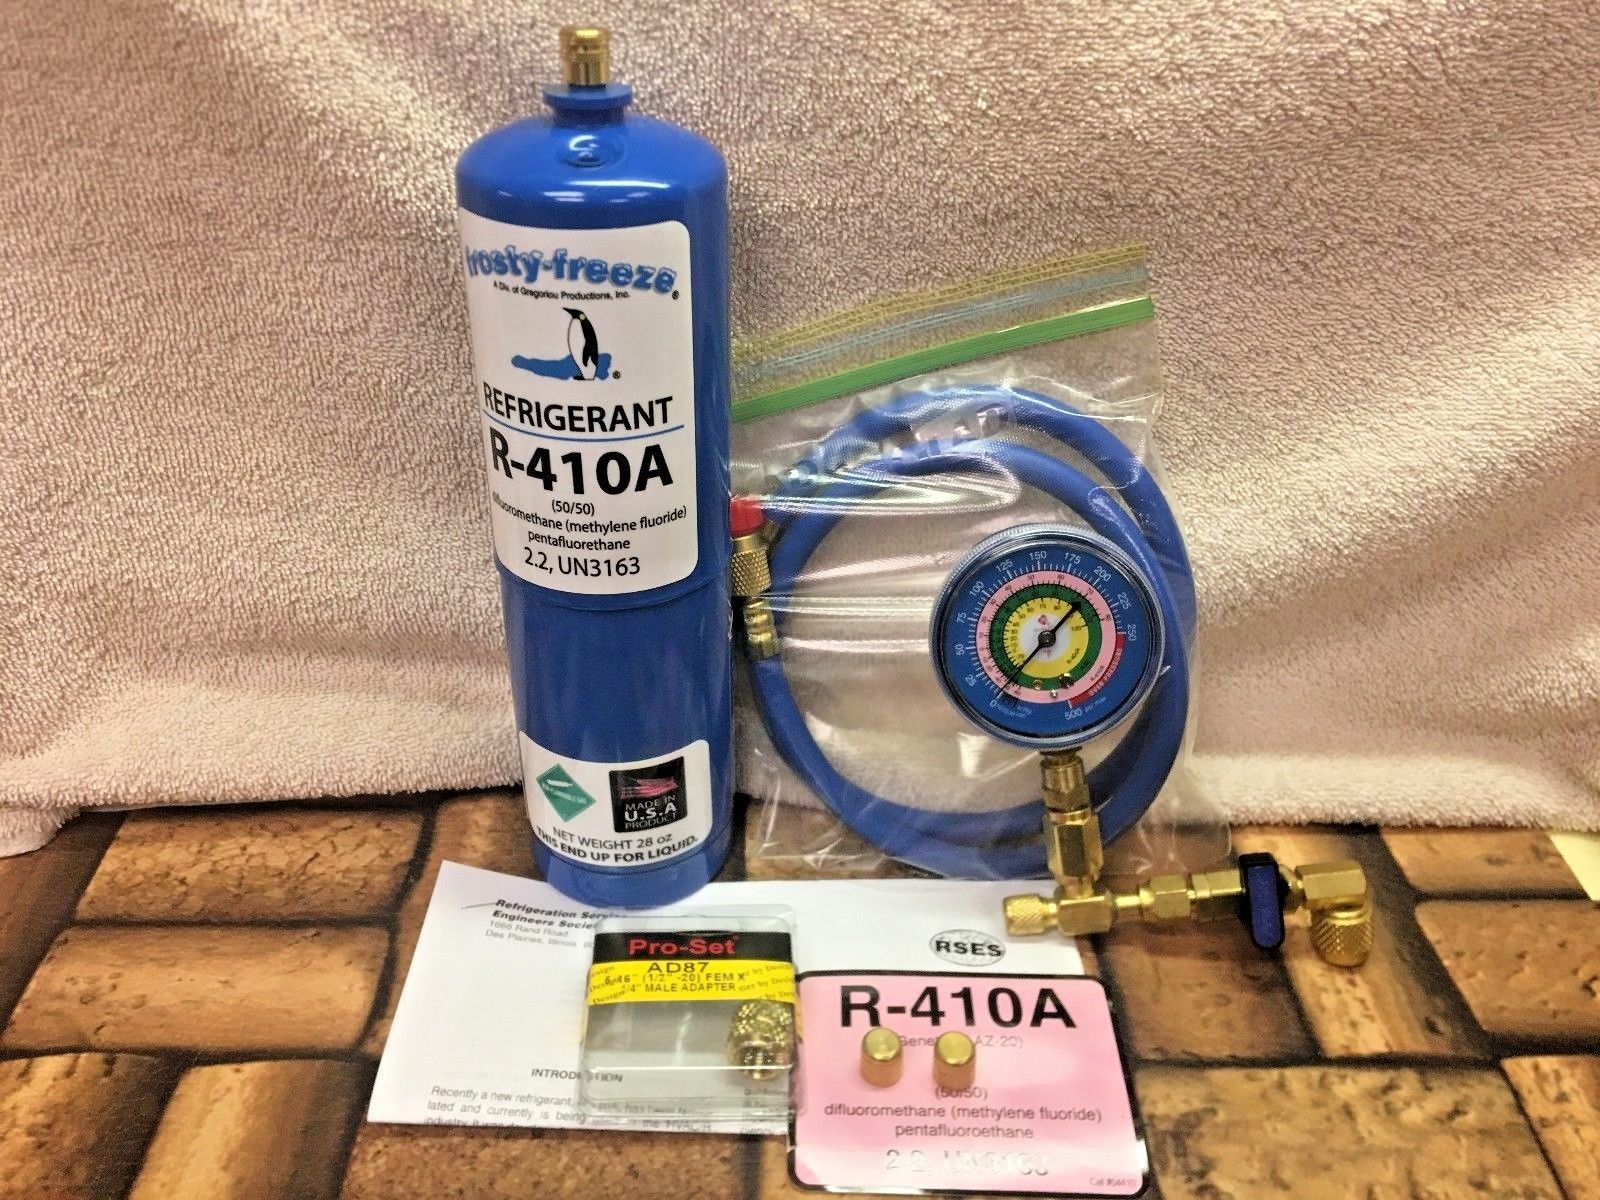 R410a, Refrigerant Recharge Kit, Gauge, Charging Hose